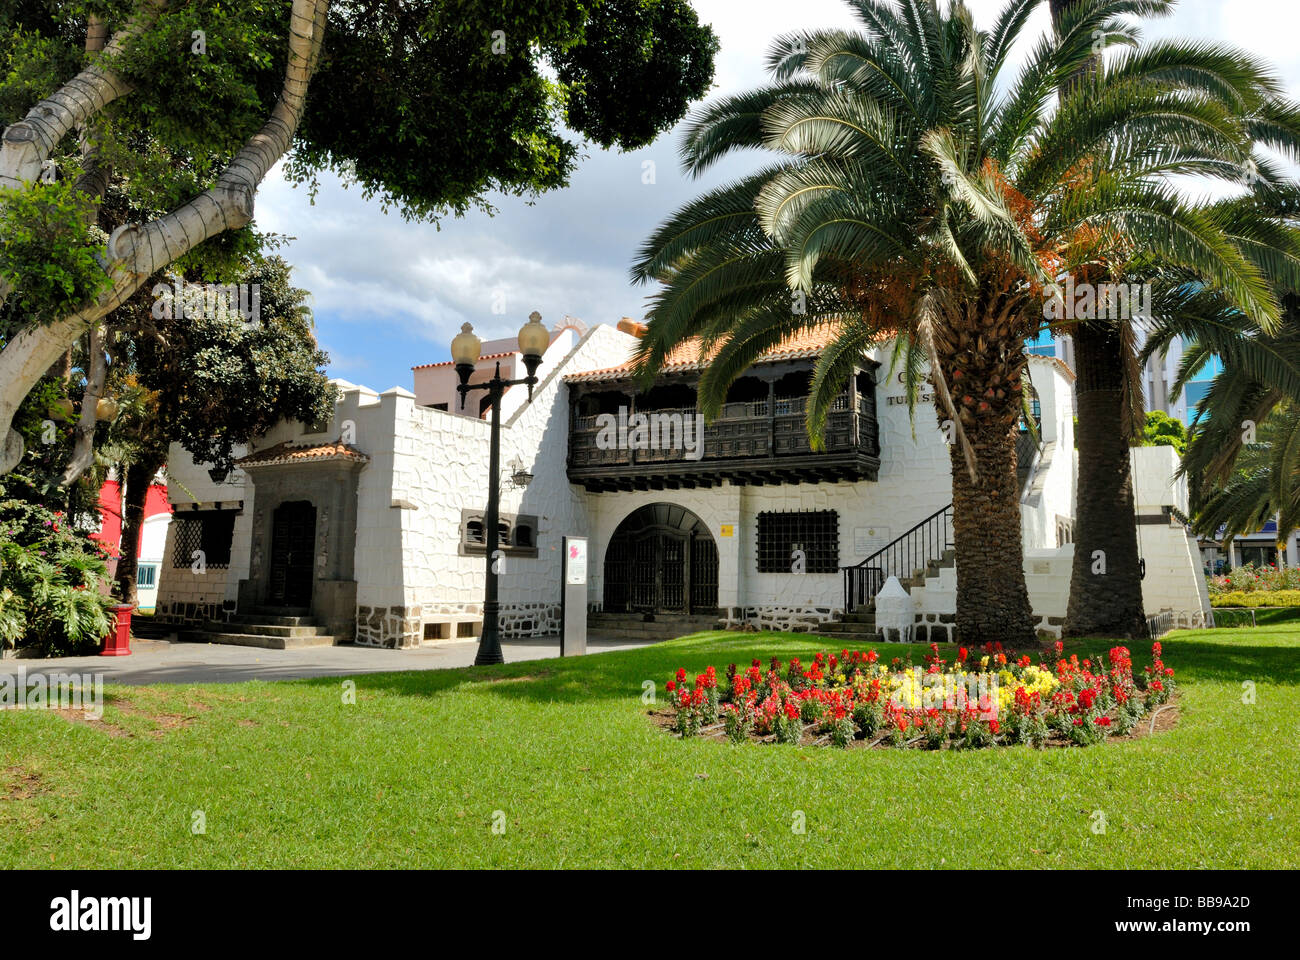 La Casa del turismo, la Oficina de Información Turística en el Parque de Santa Catalina. Las Palmas de Gran Canaria, Islas Canarias Foto de stock